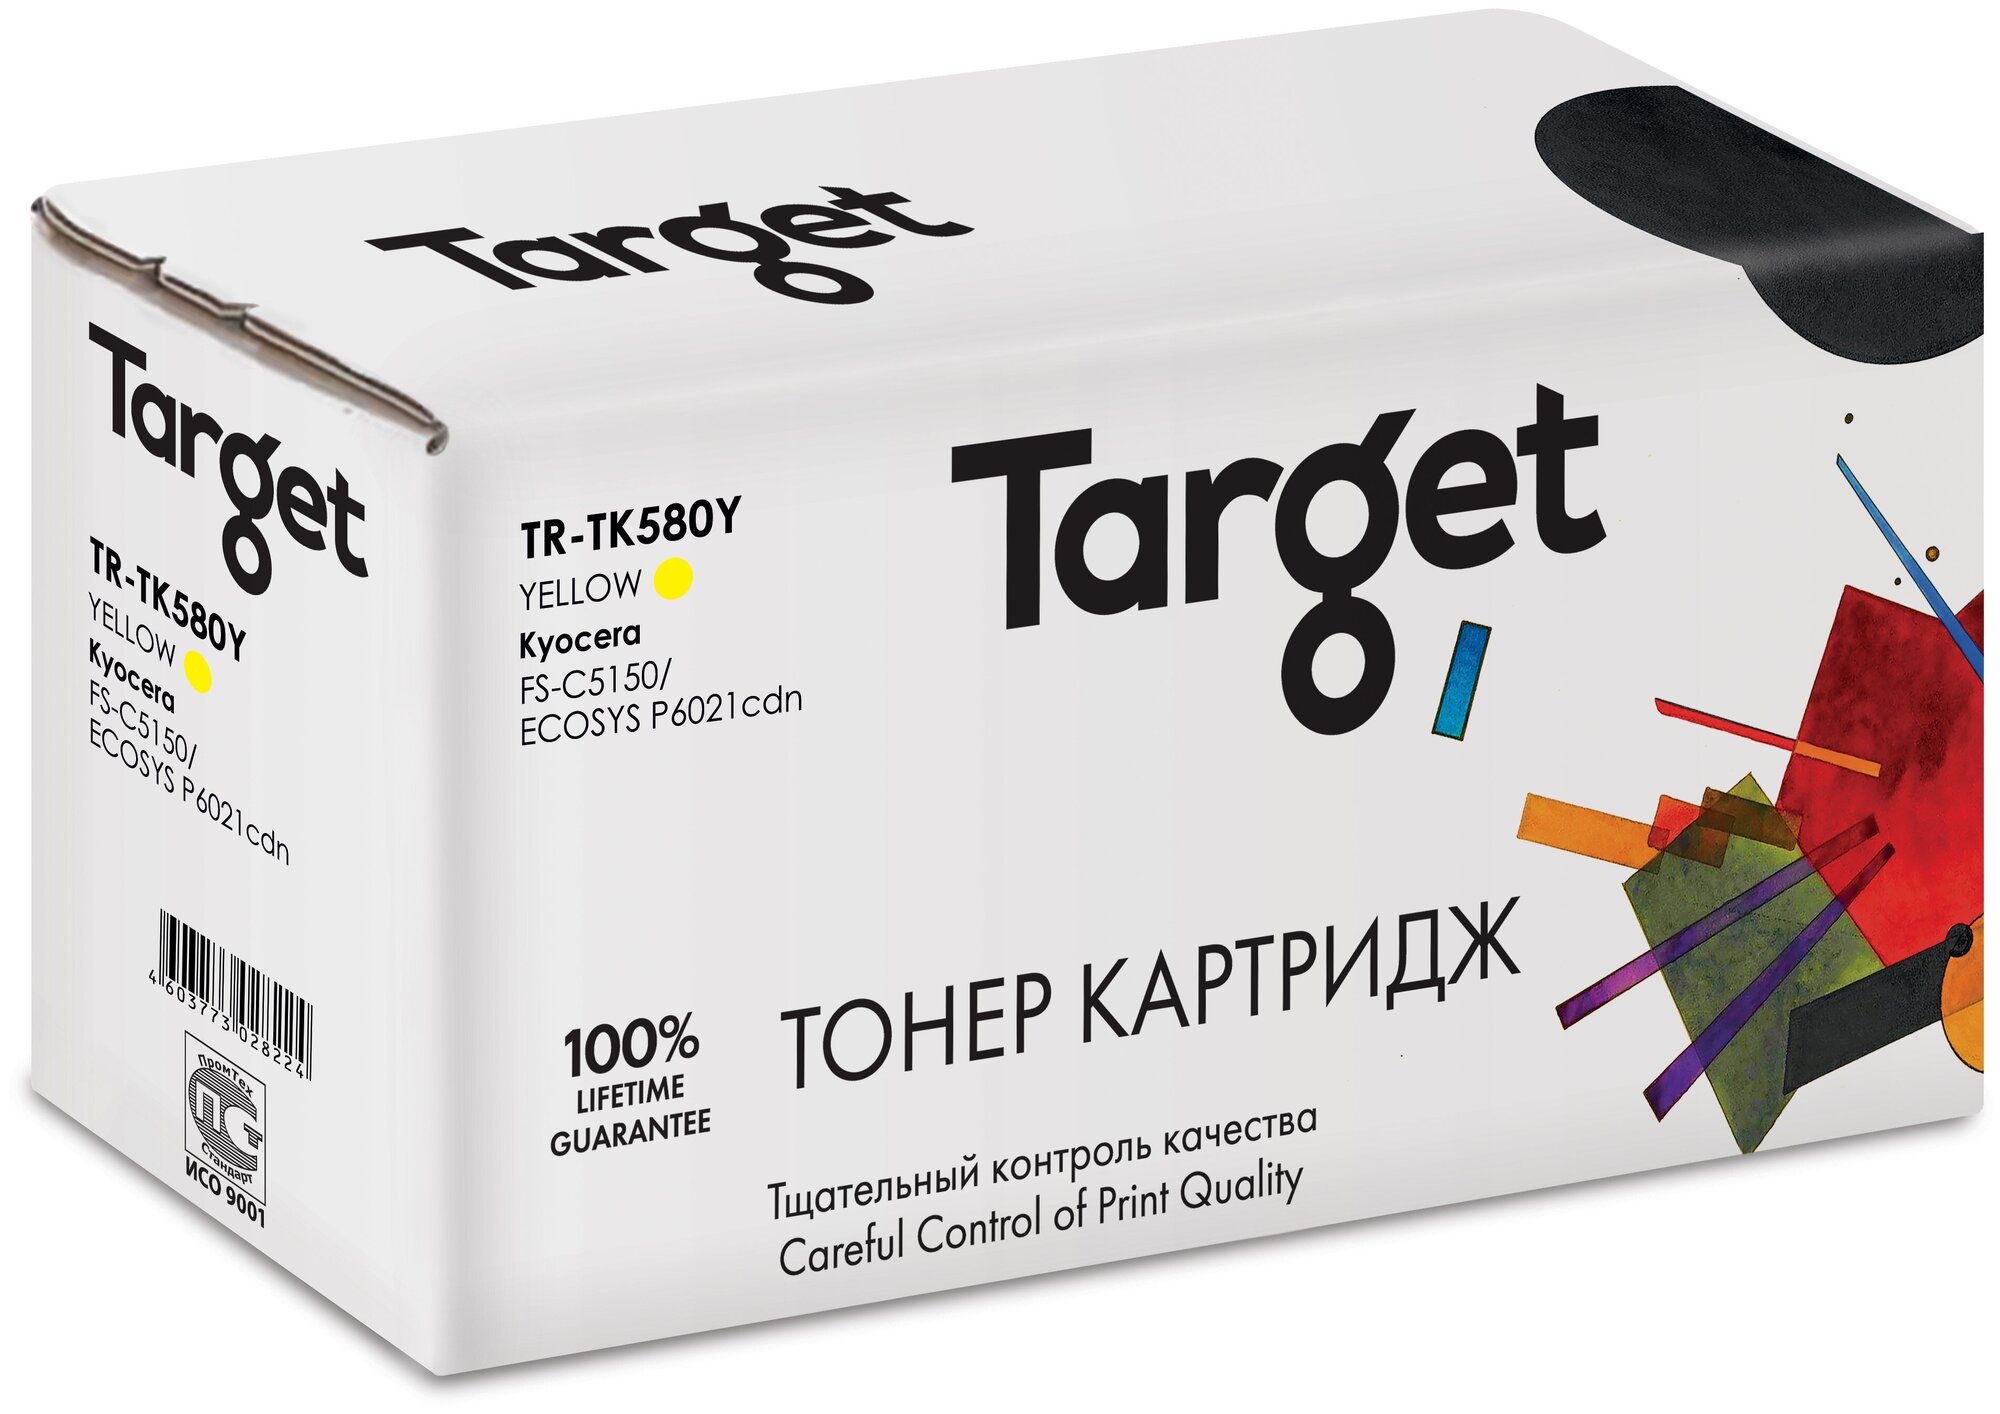 Тонер-картридж Target TK580Y, желтый, для лазерного принтера, совместимый